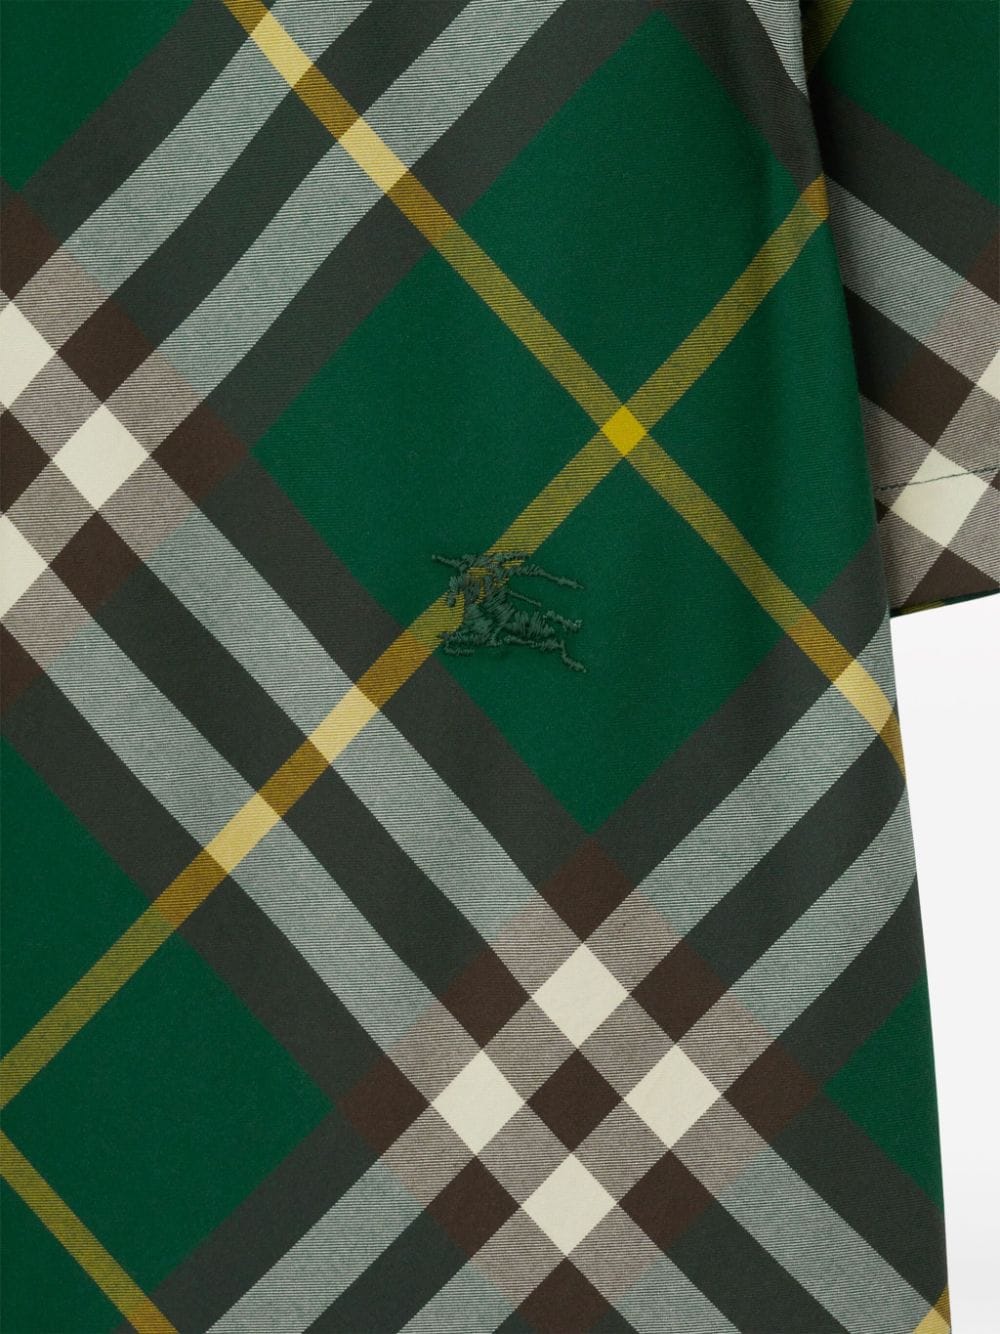 Camicia in cotone fantasia check scozzese verde/multicolore